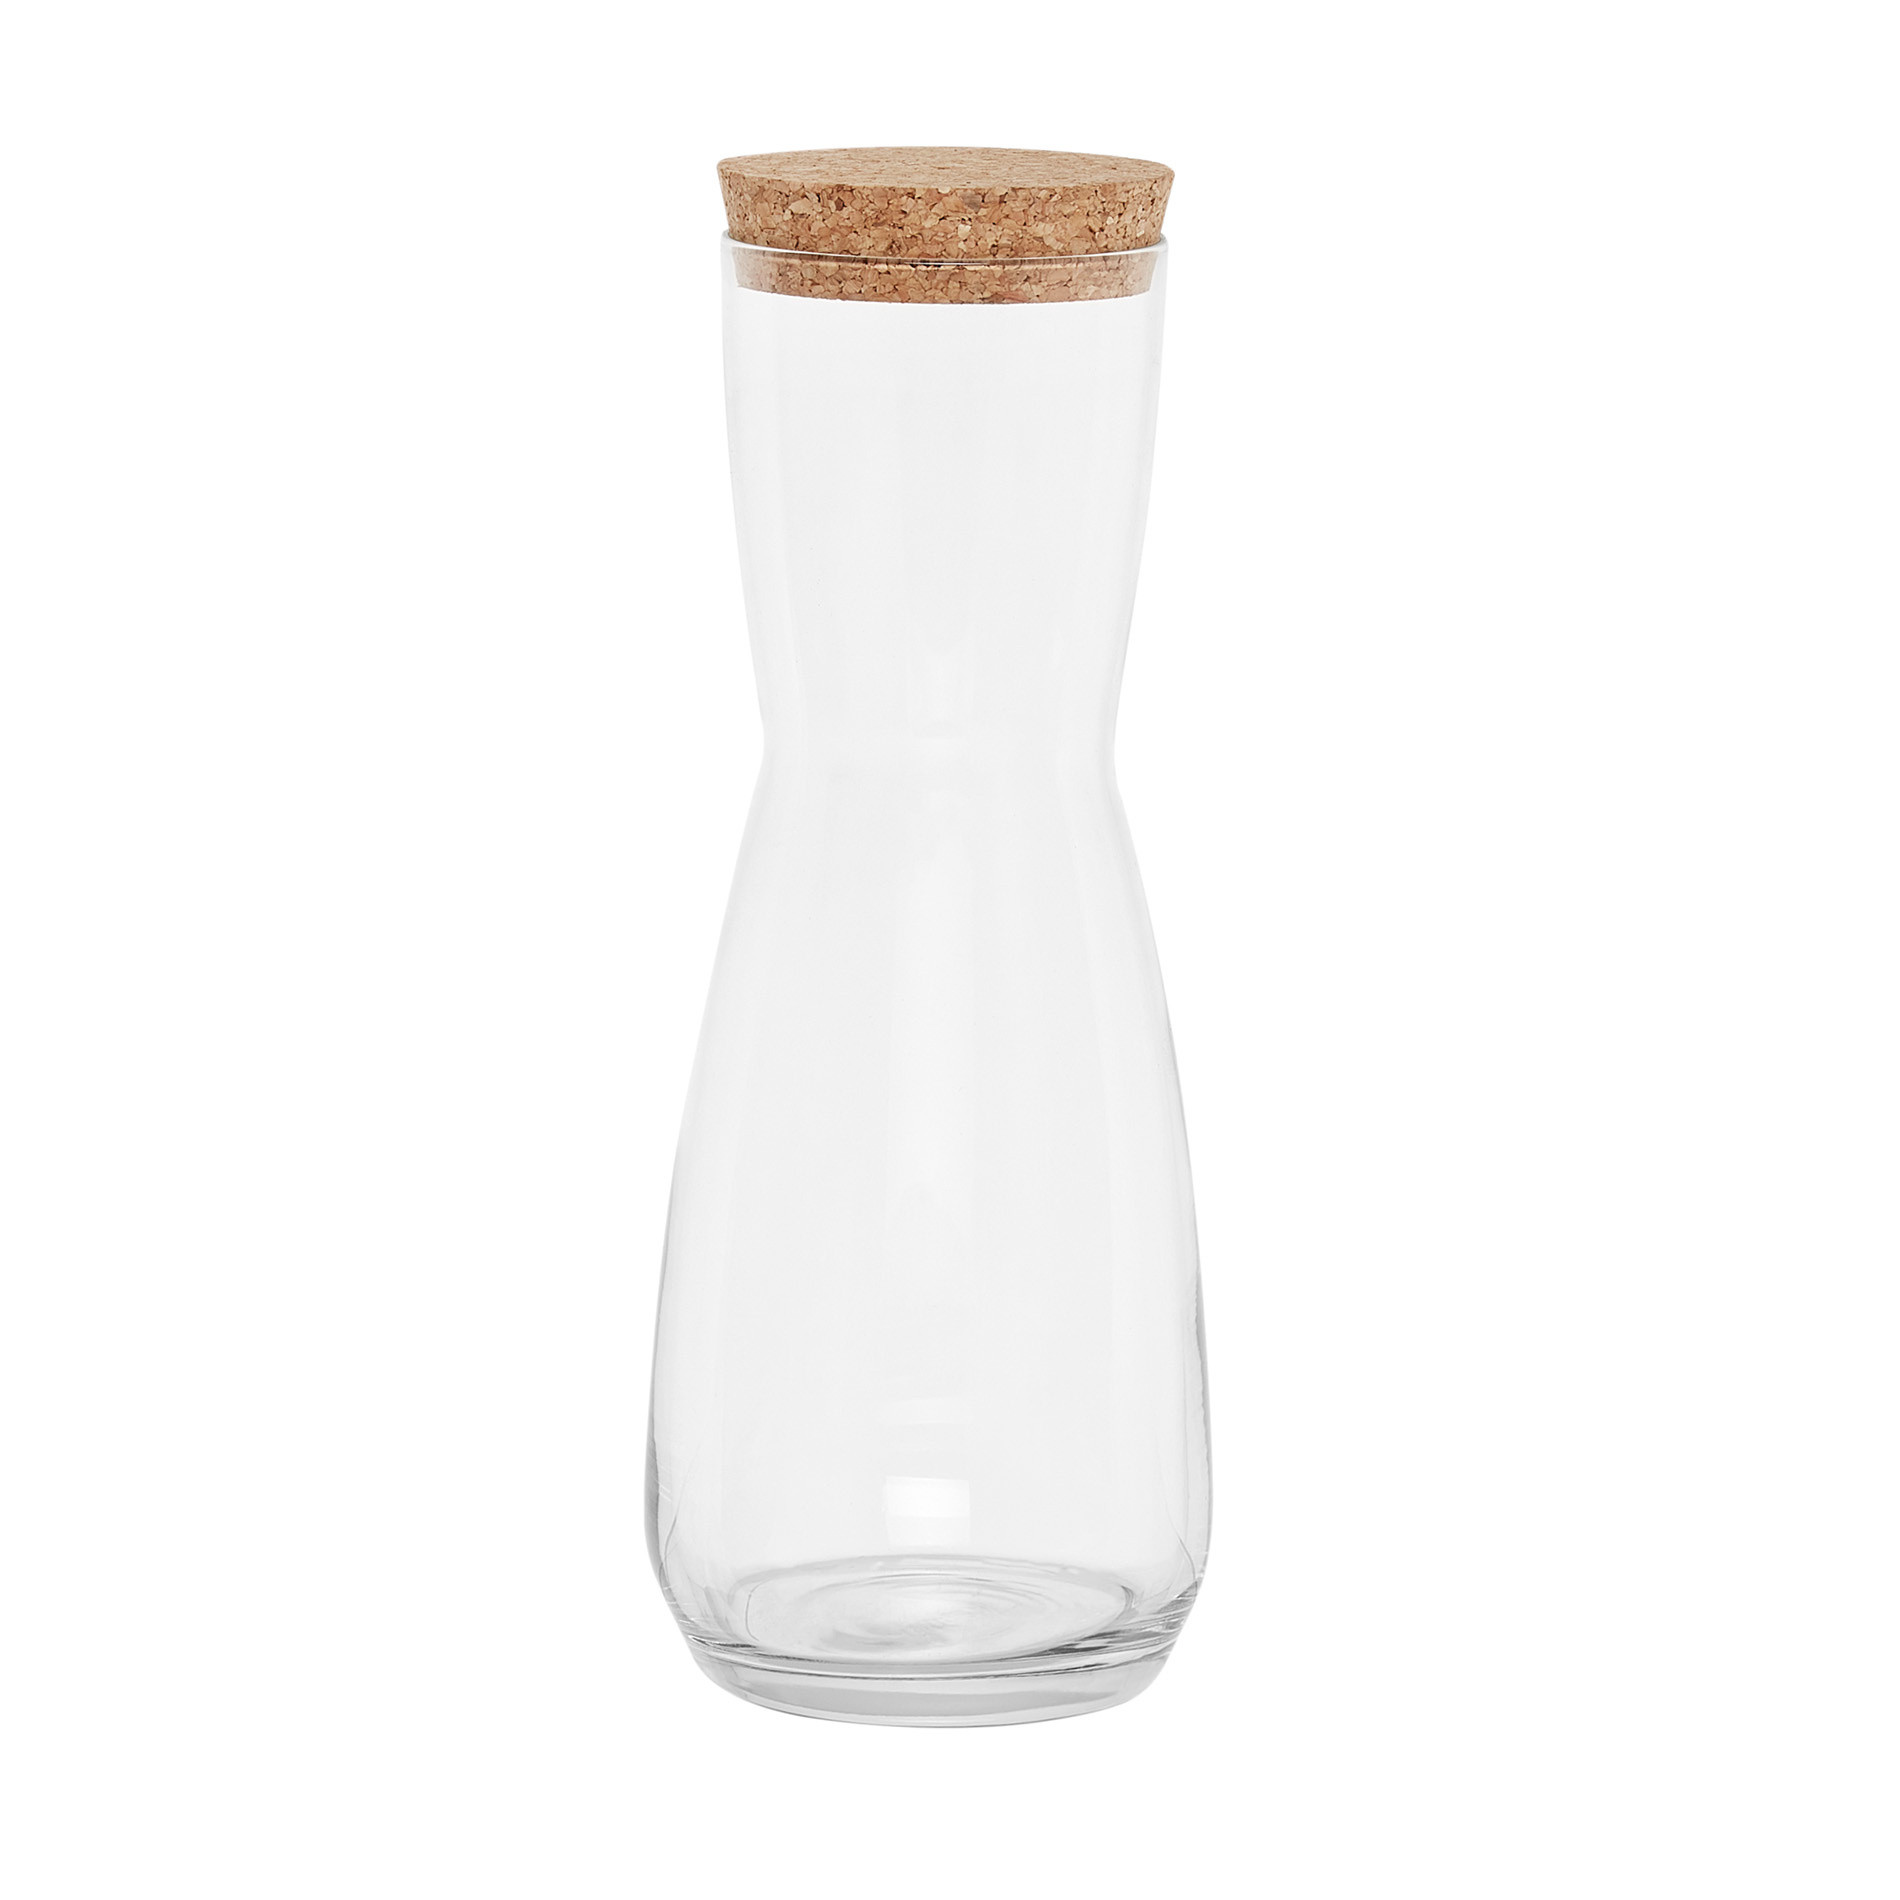 0.74 L glass jug with lid, Transparent, large image number 0